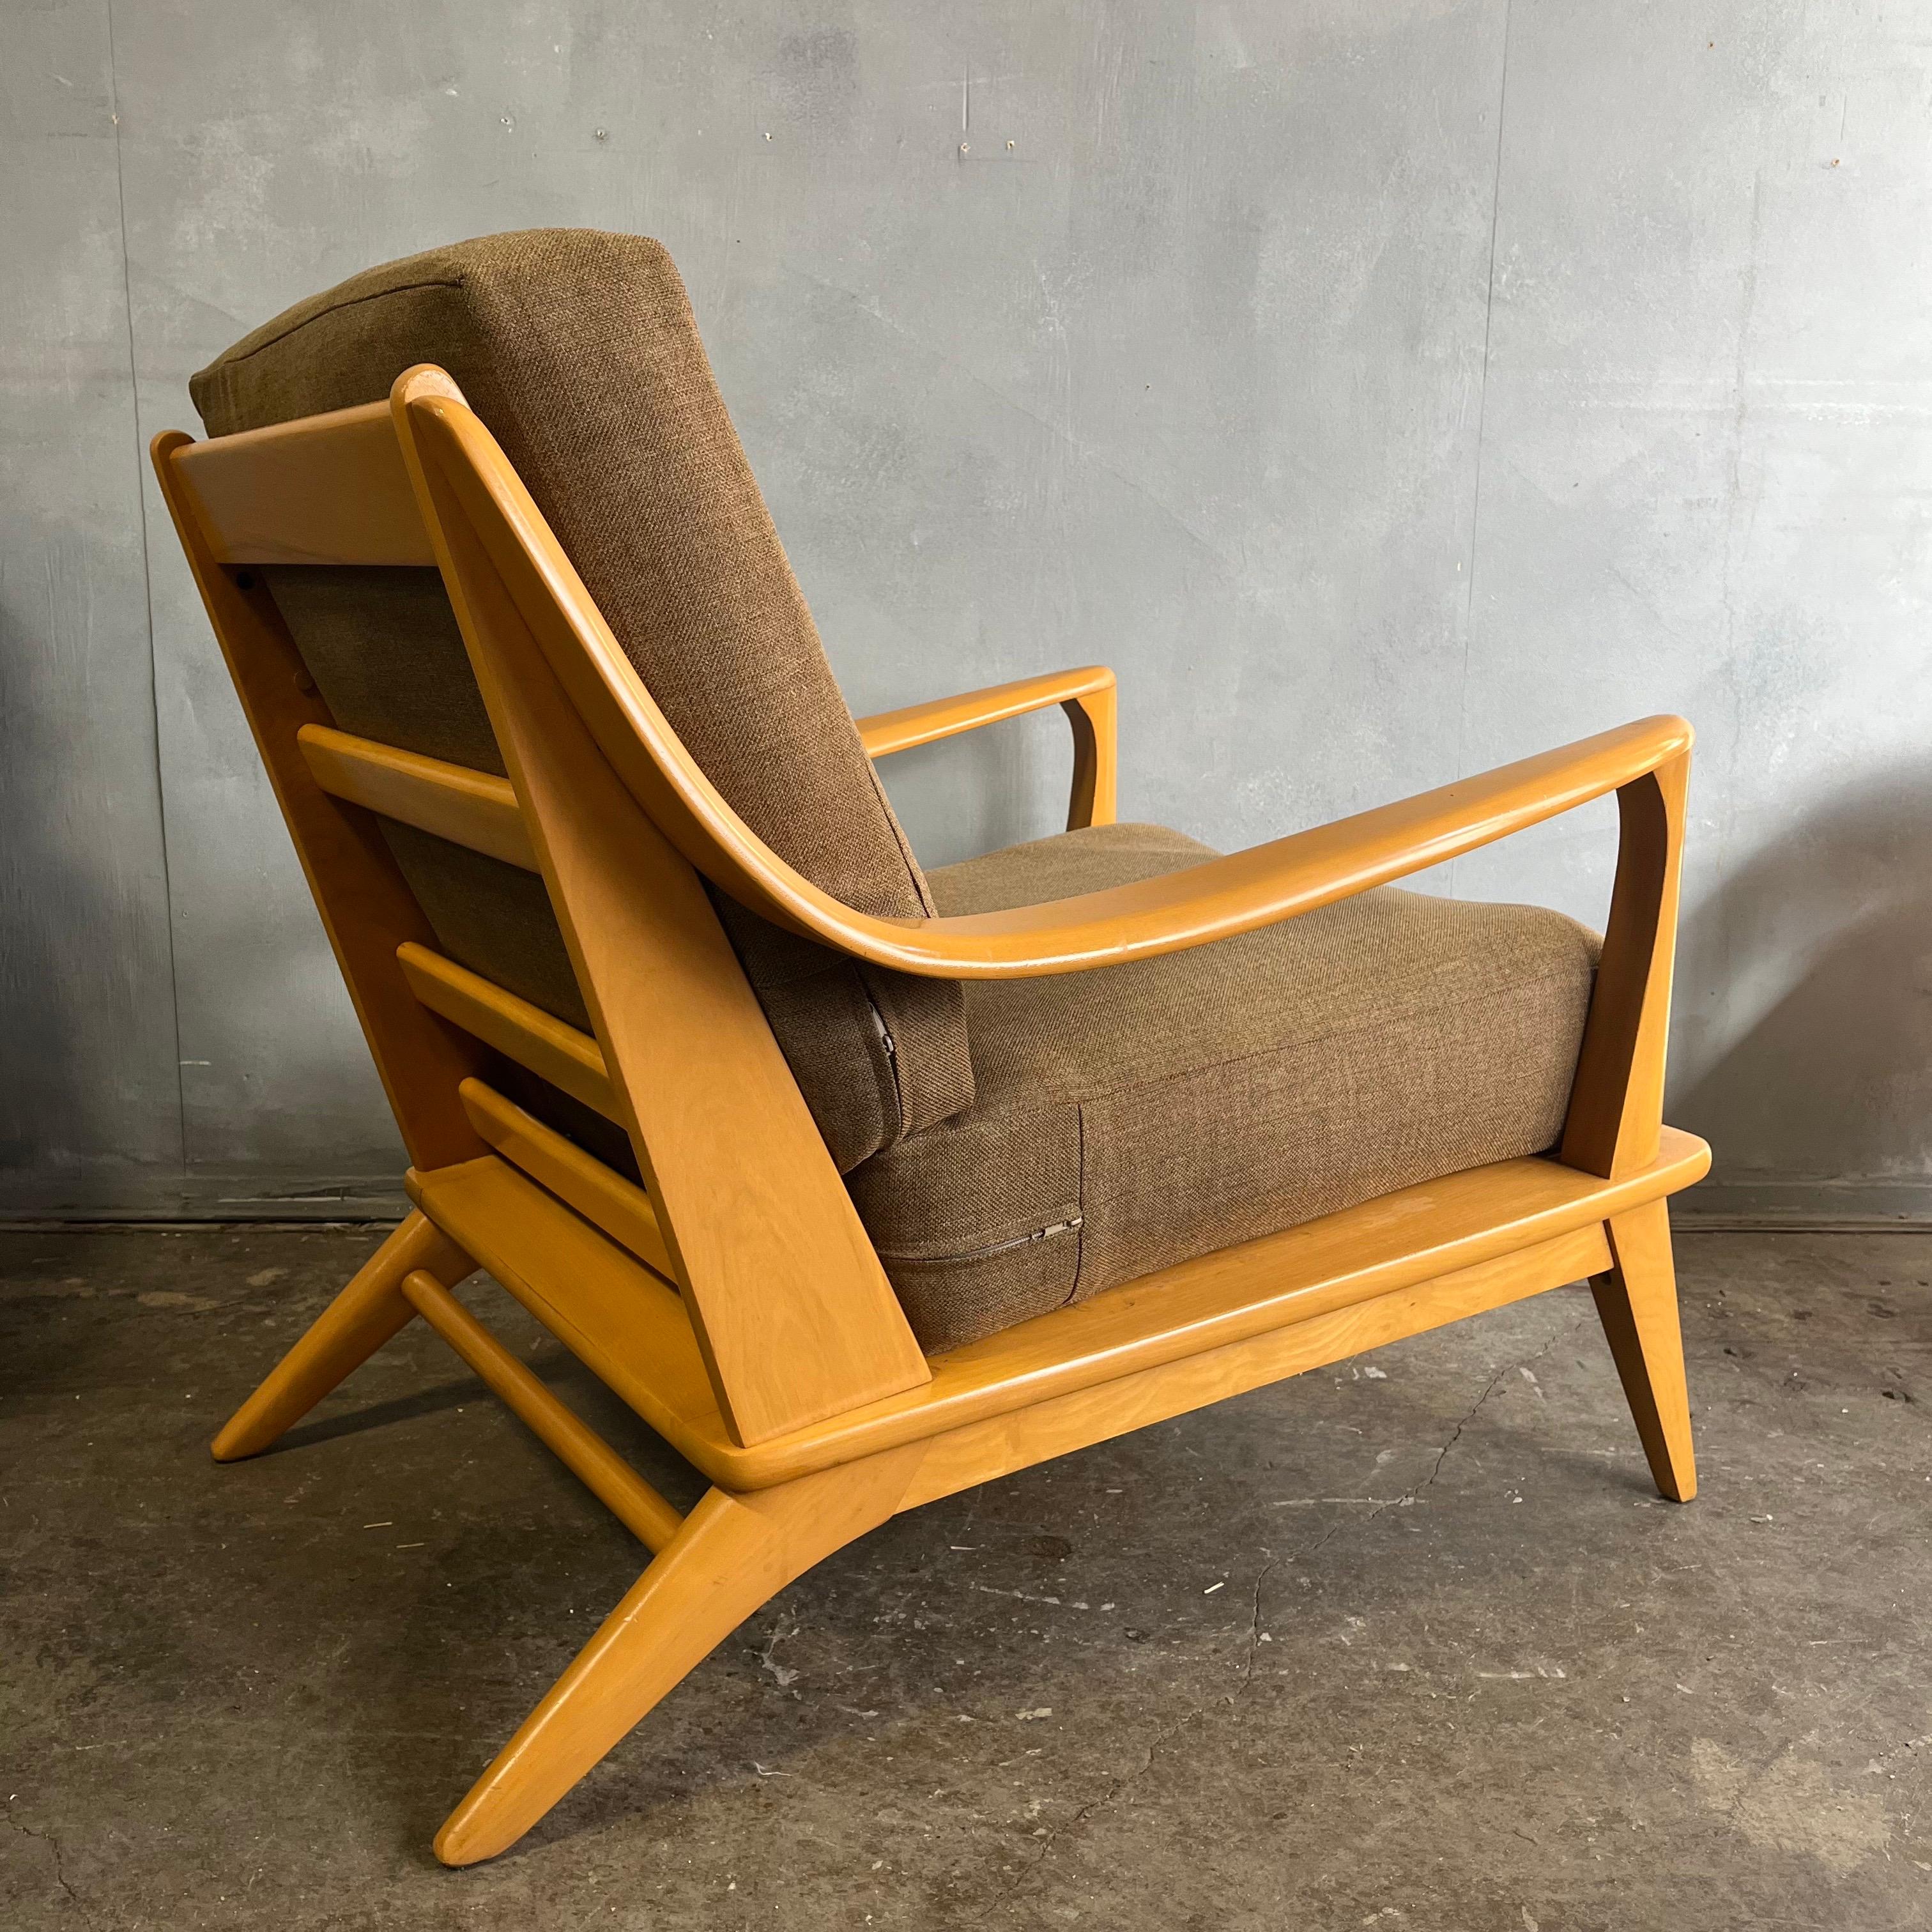 American Midcentury Heywood Wakefield Lounge Chair